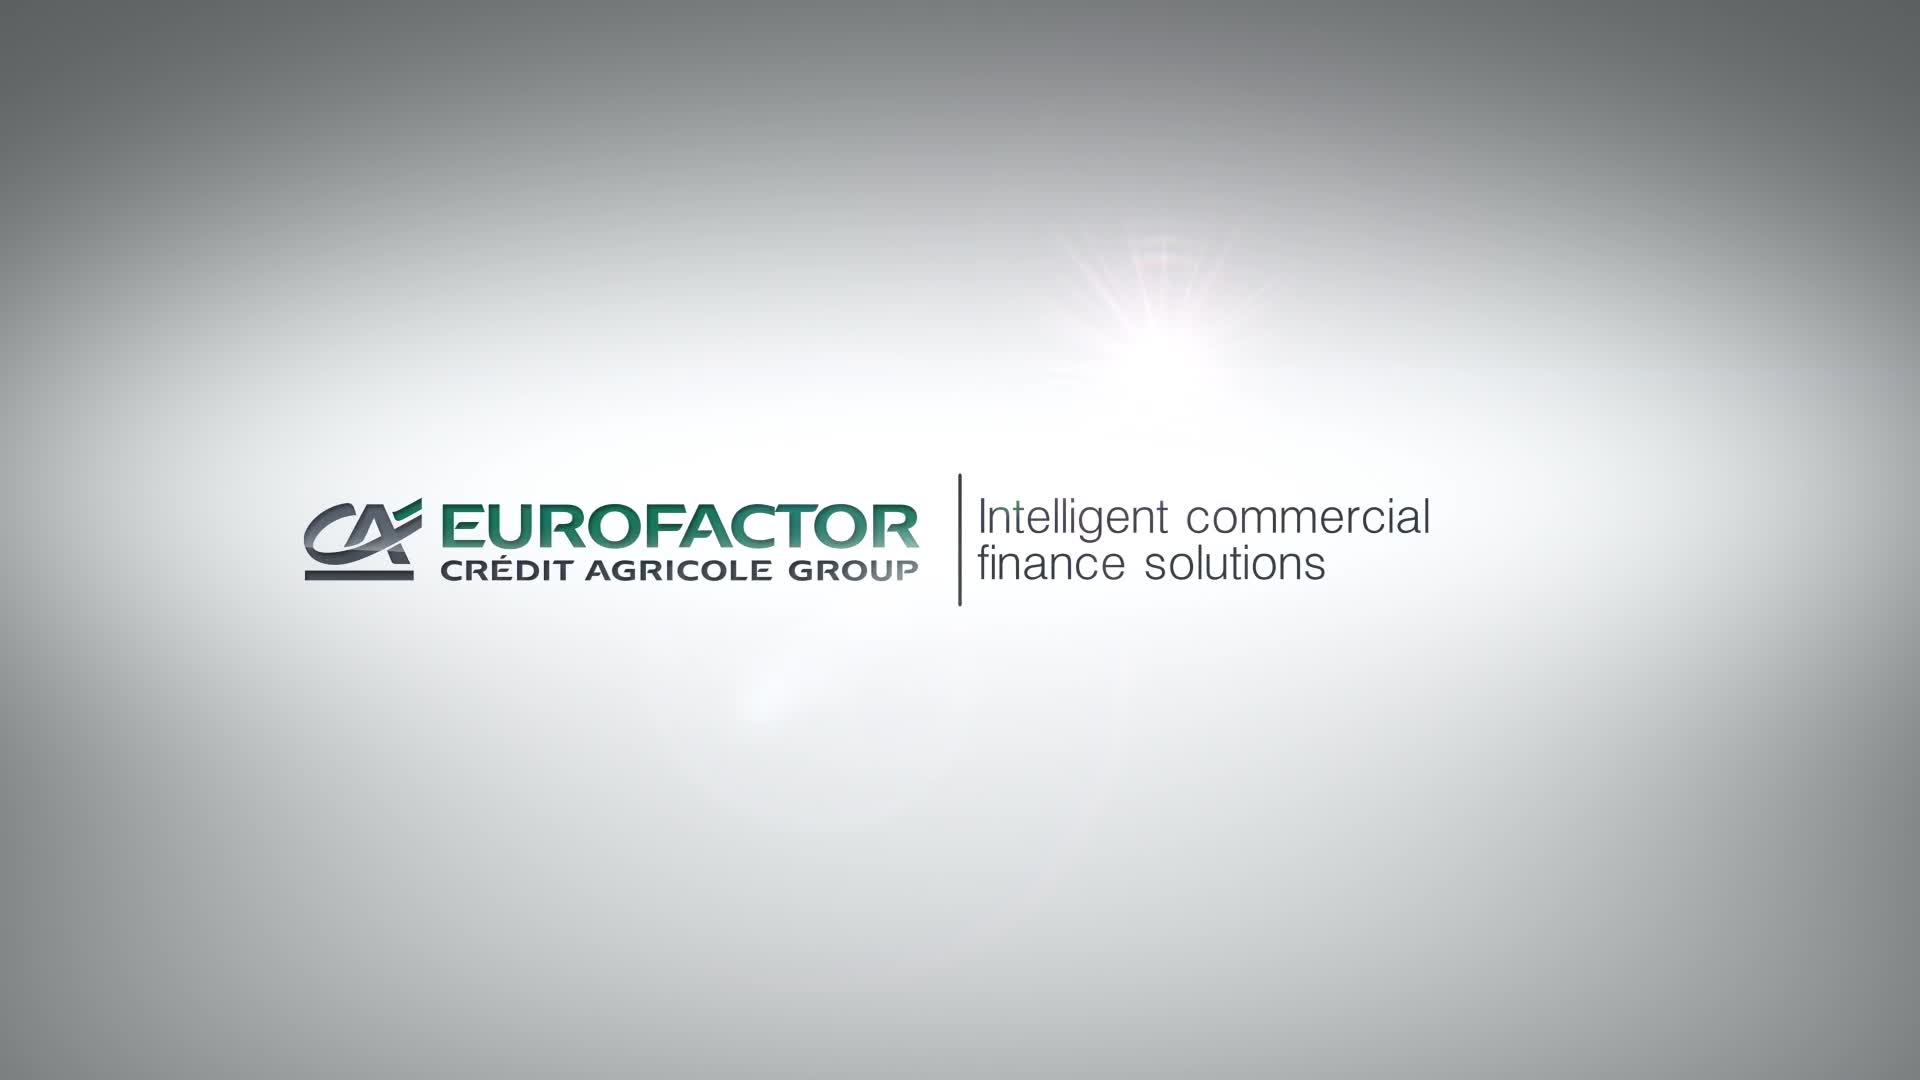 Eurofactor Image Clip